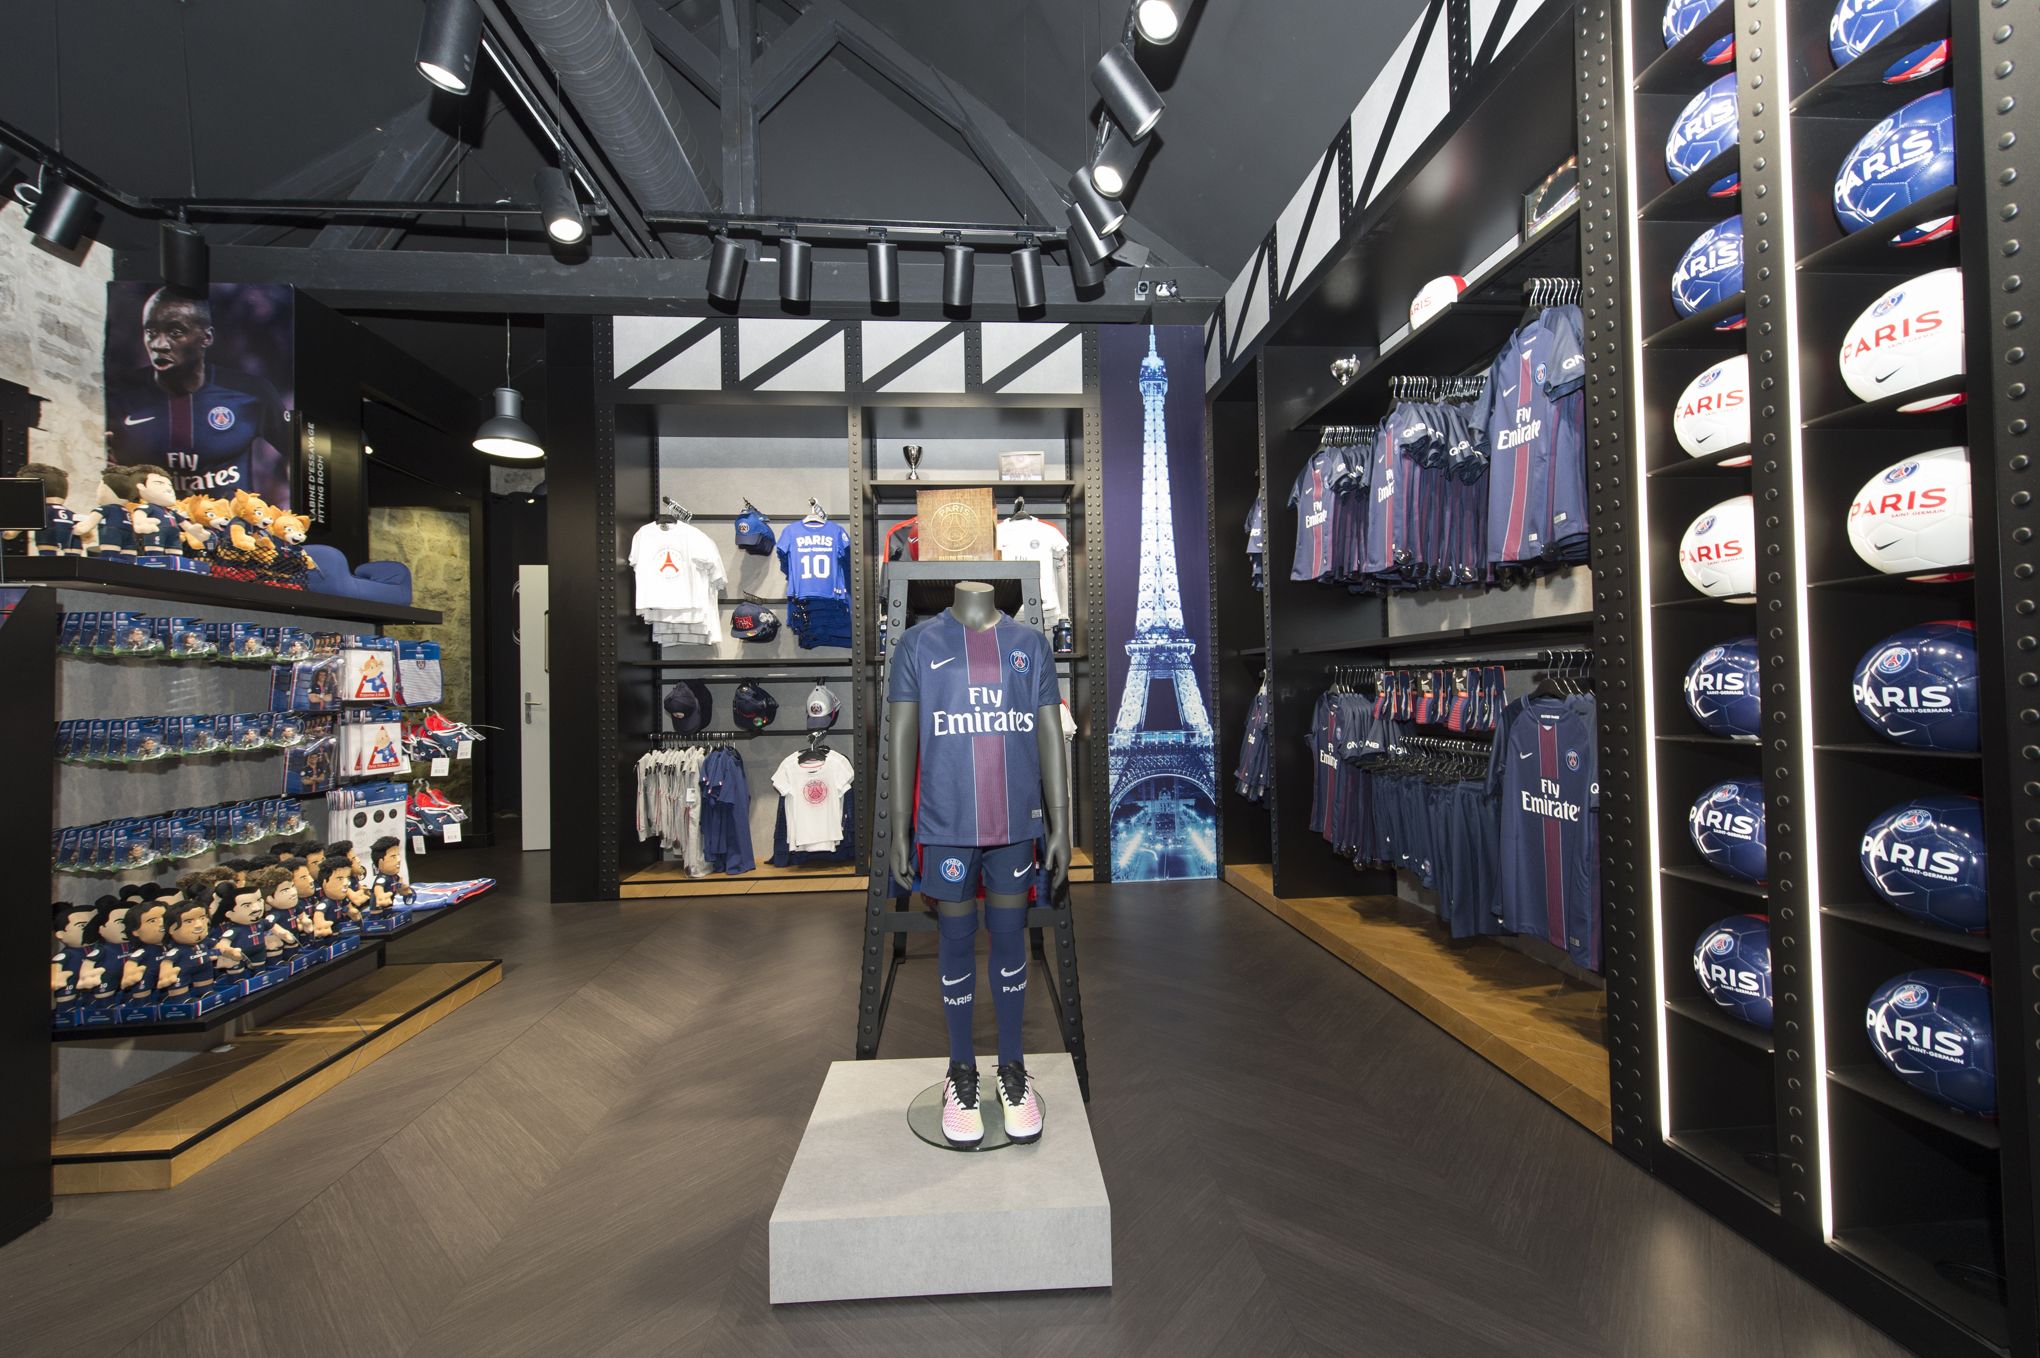 Boutique PSG : maillots & produits officiels